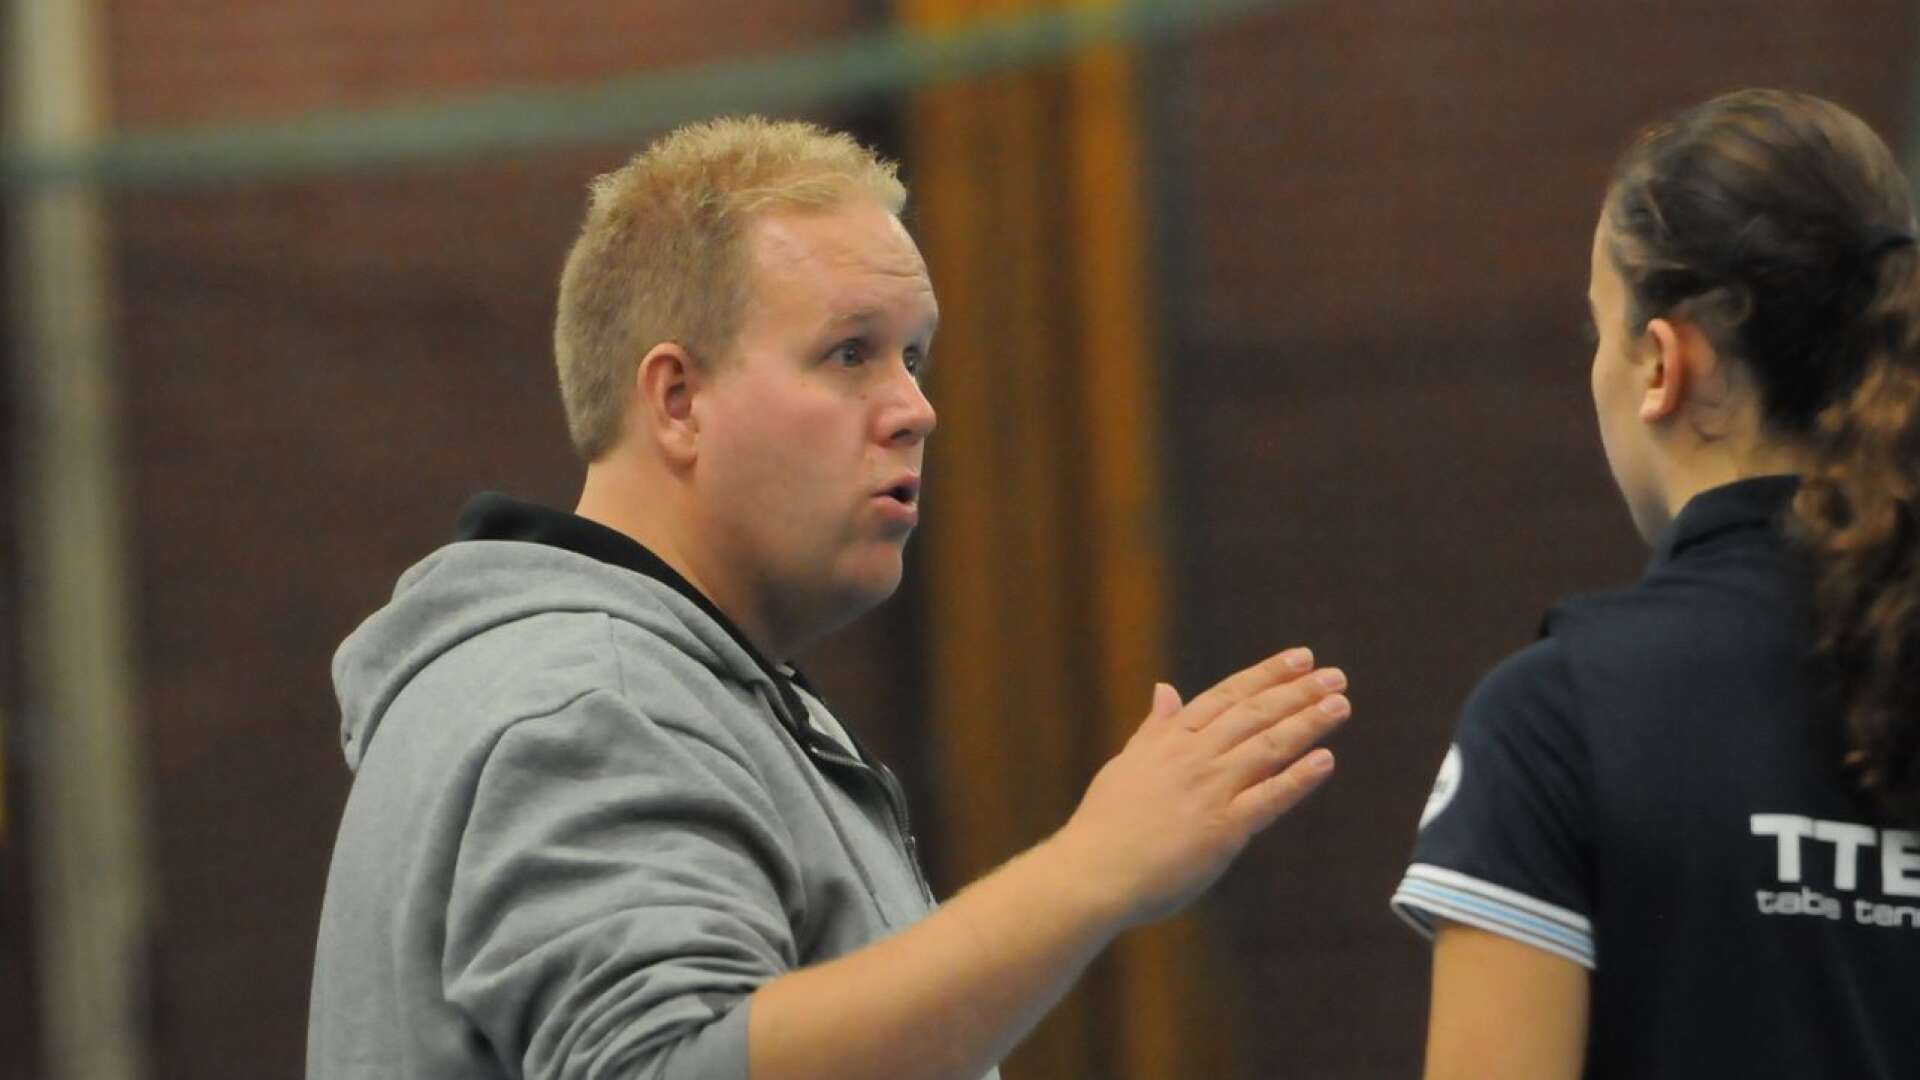 Västvärmländska bordtennisprofilen Andreas Wirén är invald i skolidrottsförbundet.